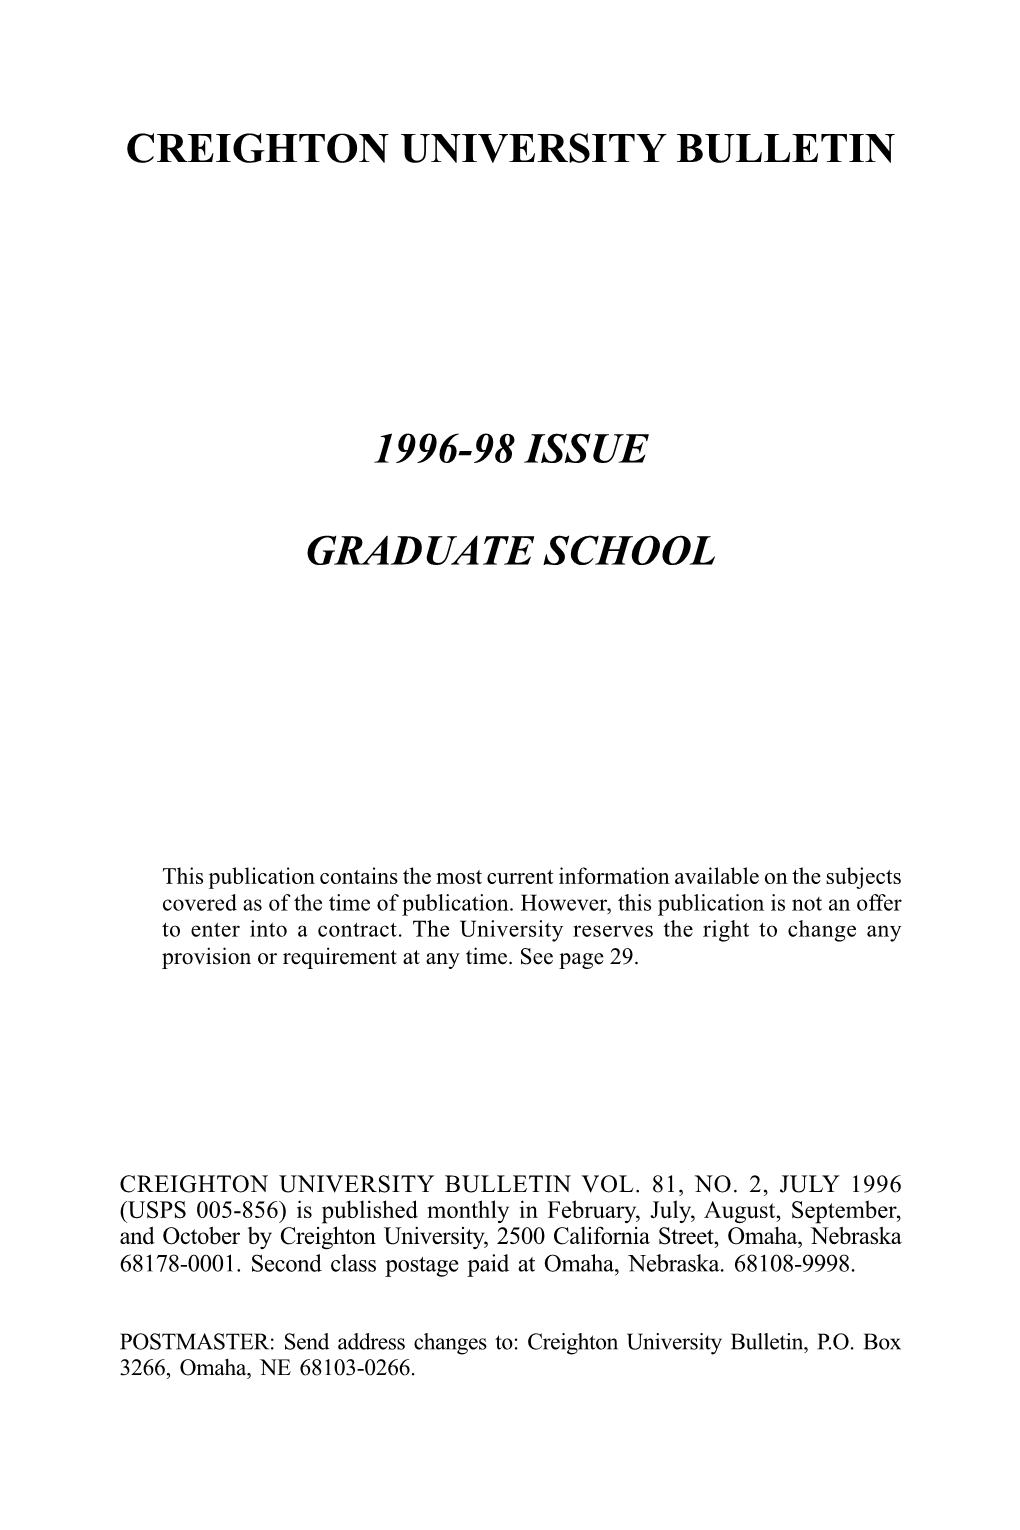 Graduate School 1996-98